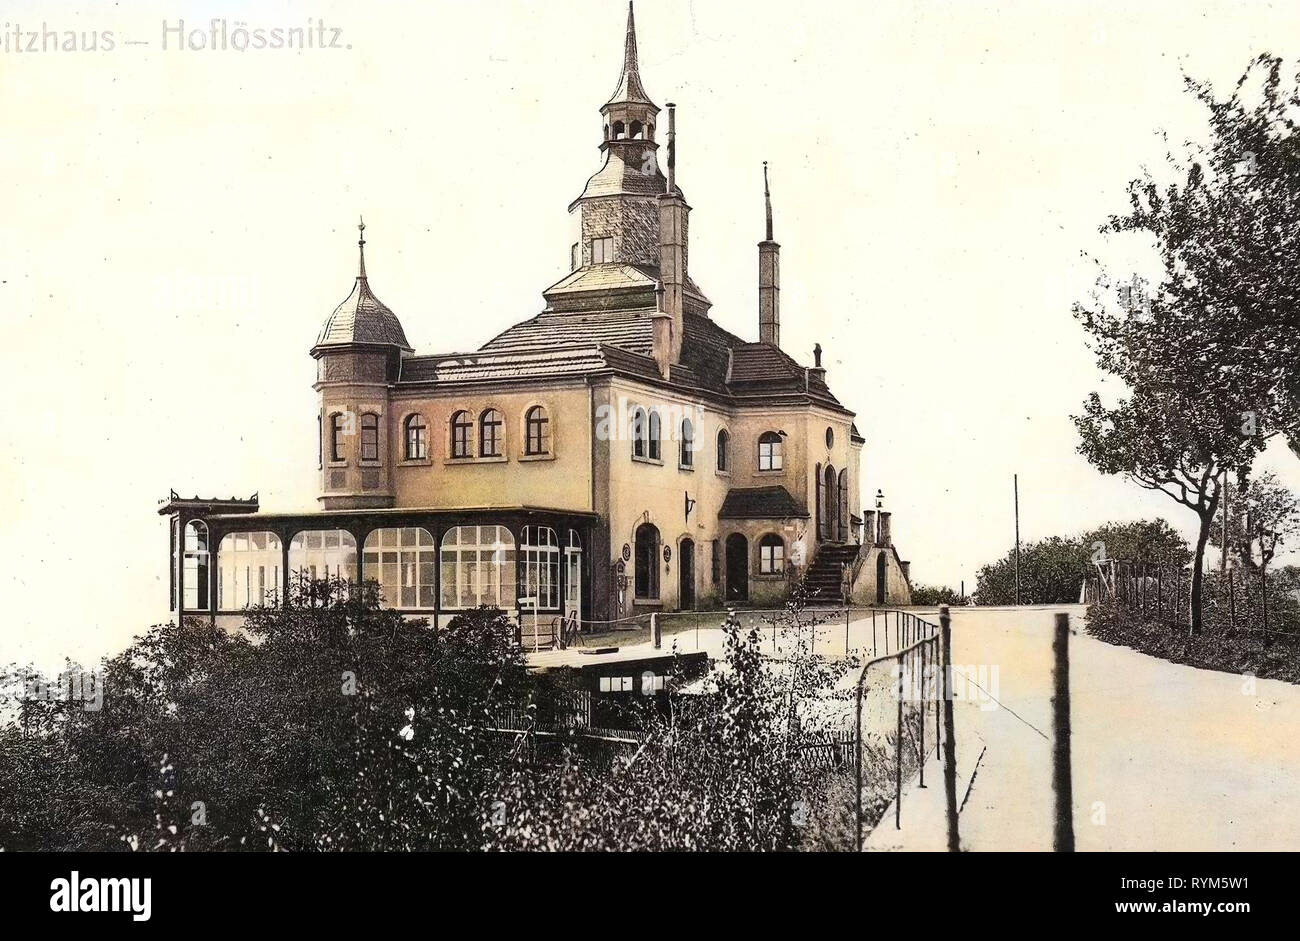 Spitzhaus, 1903, Landkreis Meißen, Radebeul, Hoflößnitz, Germany Stock Photo